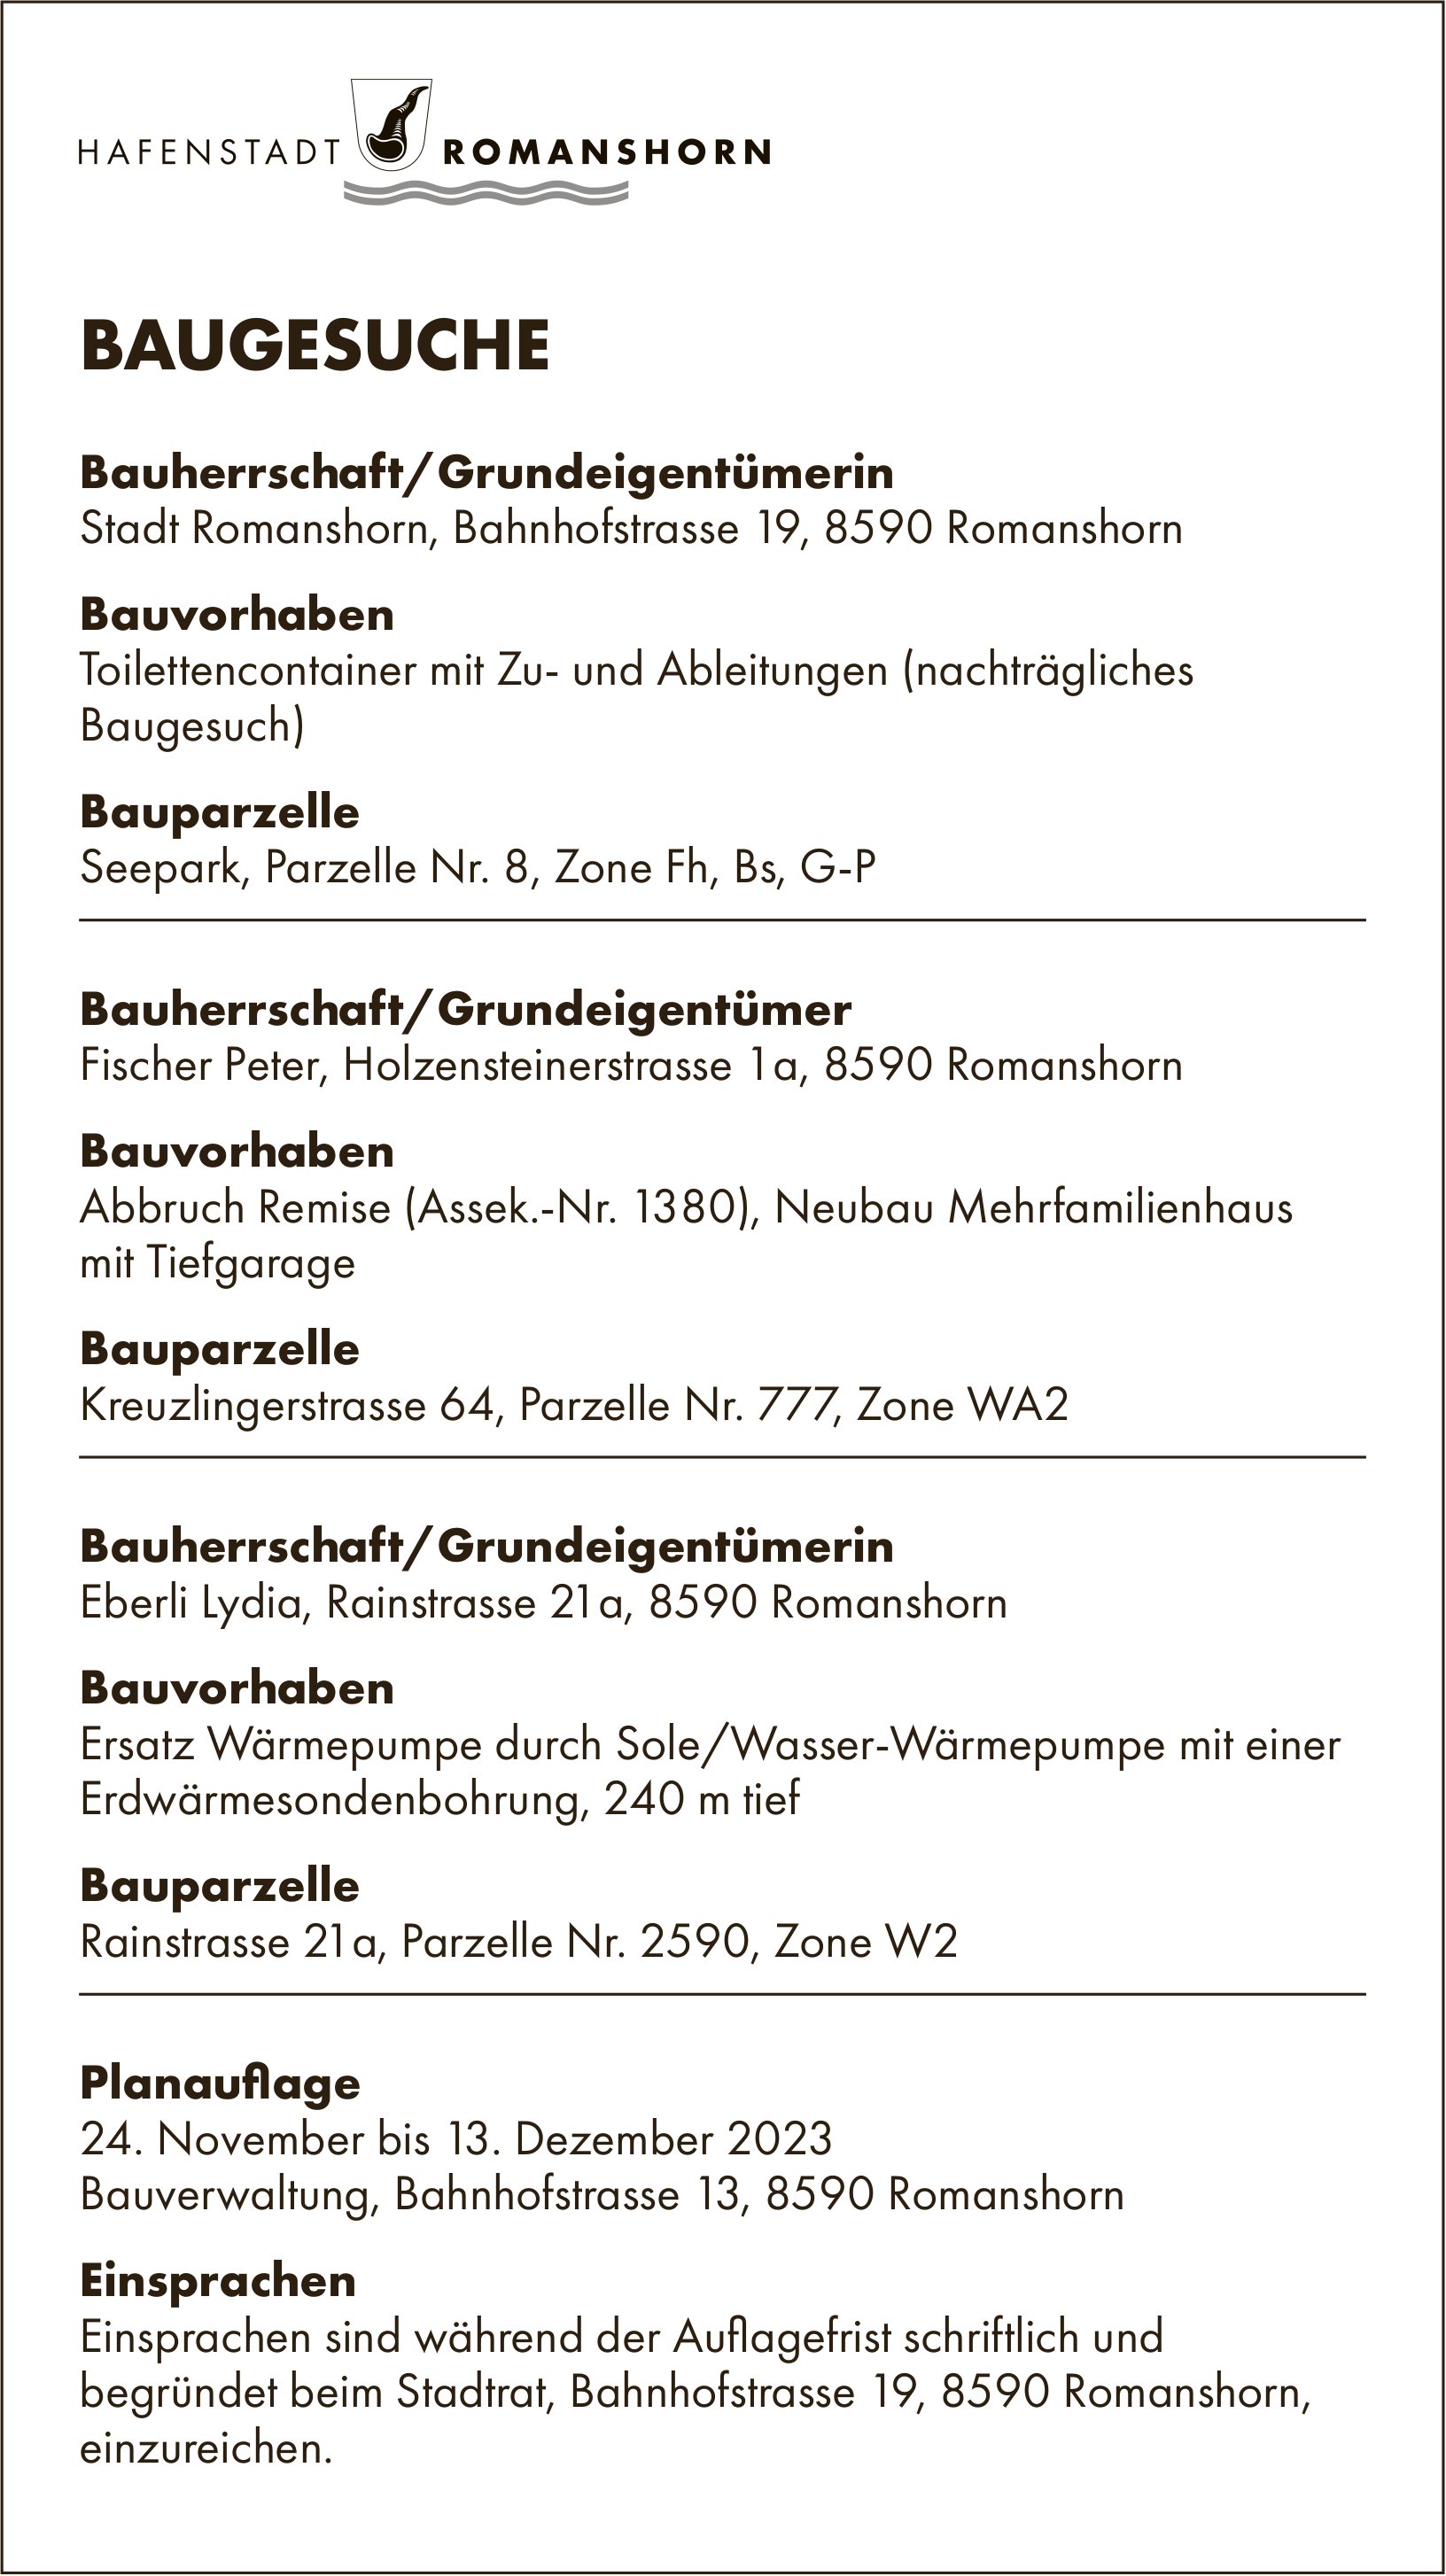 Baugesuche vom 24. November bis 13. Dezember 2023, Romanshorn - Bauherrschaft/Grundeigentümerin